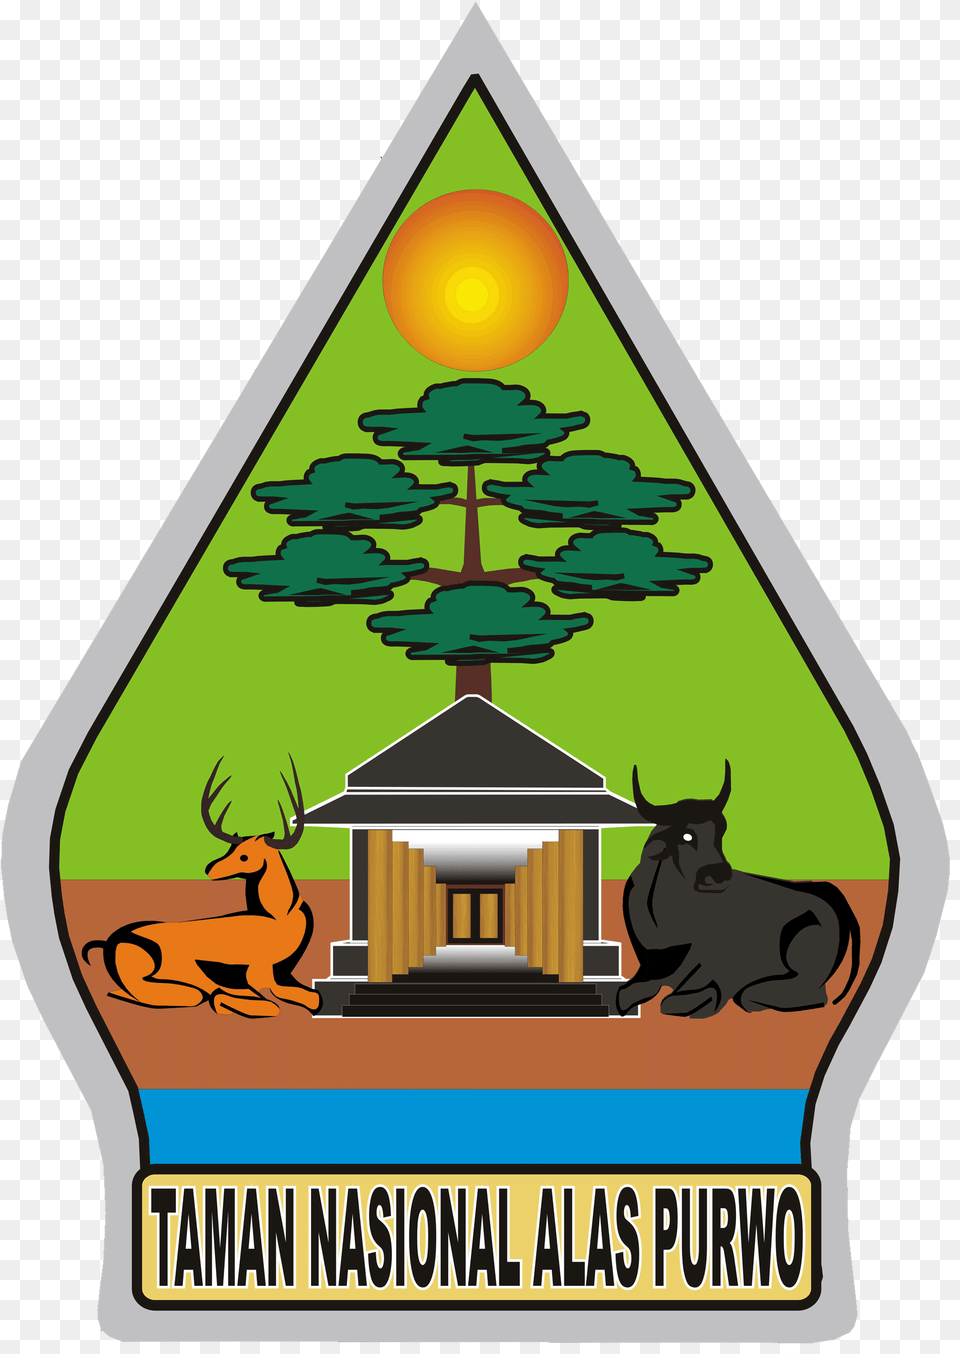 Logo Transparan Logo Taman Nasional Alas Purwo, Outdoors, Animal, Cattle, Cow Free Transparent Png